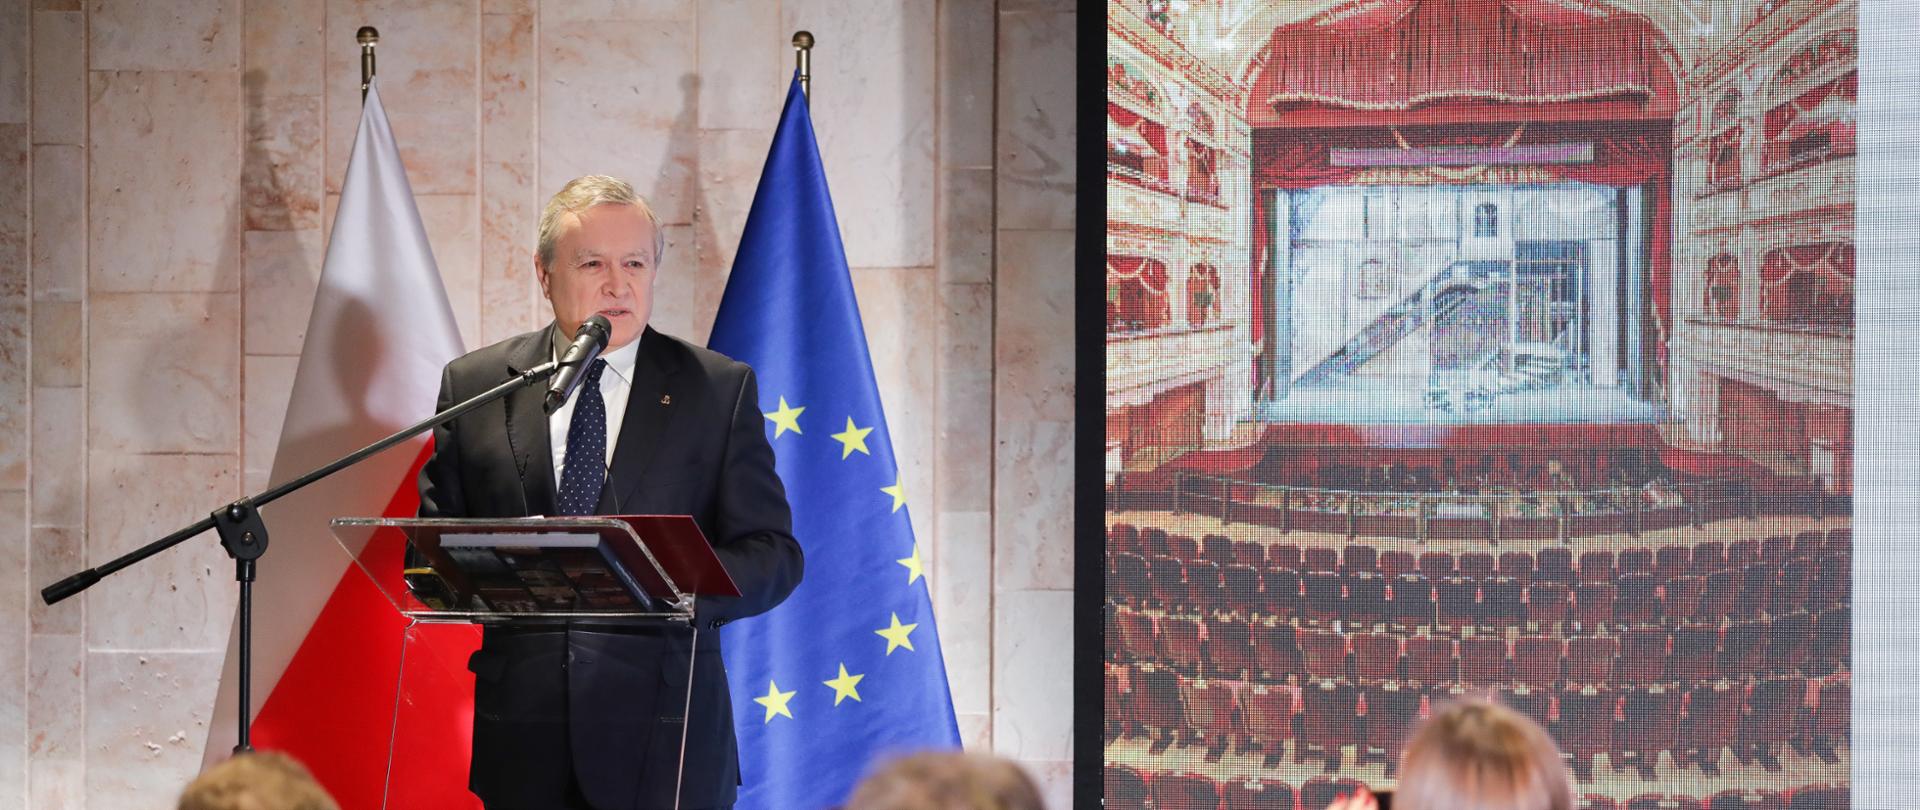 Wicepremier Piotr Gliński: Polska jest liderem wykorzystania środków UE na kulturę w Europie, fot. Danuta Matloch